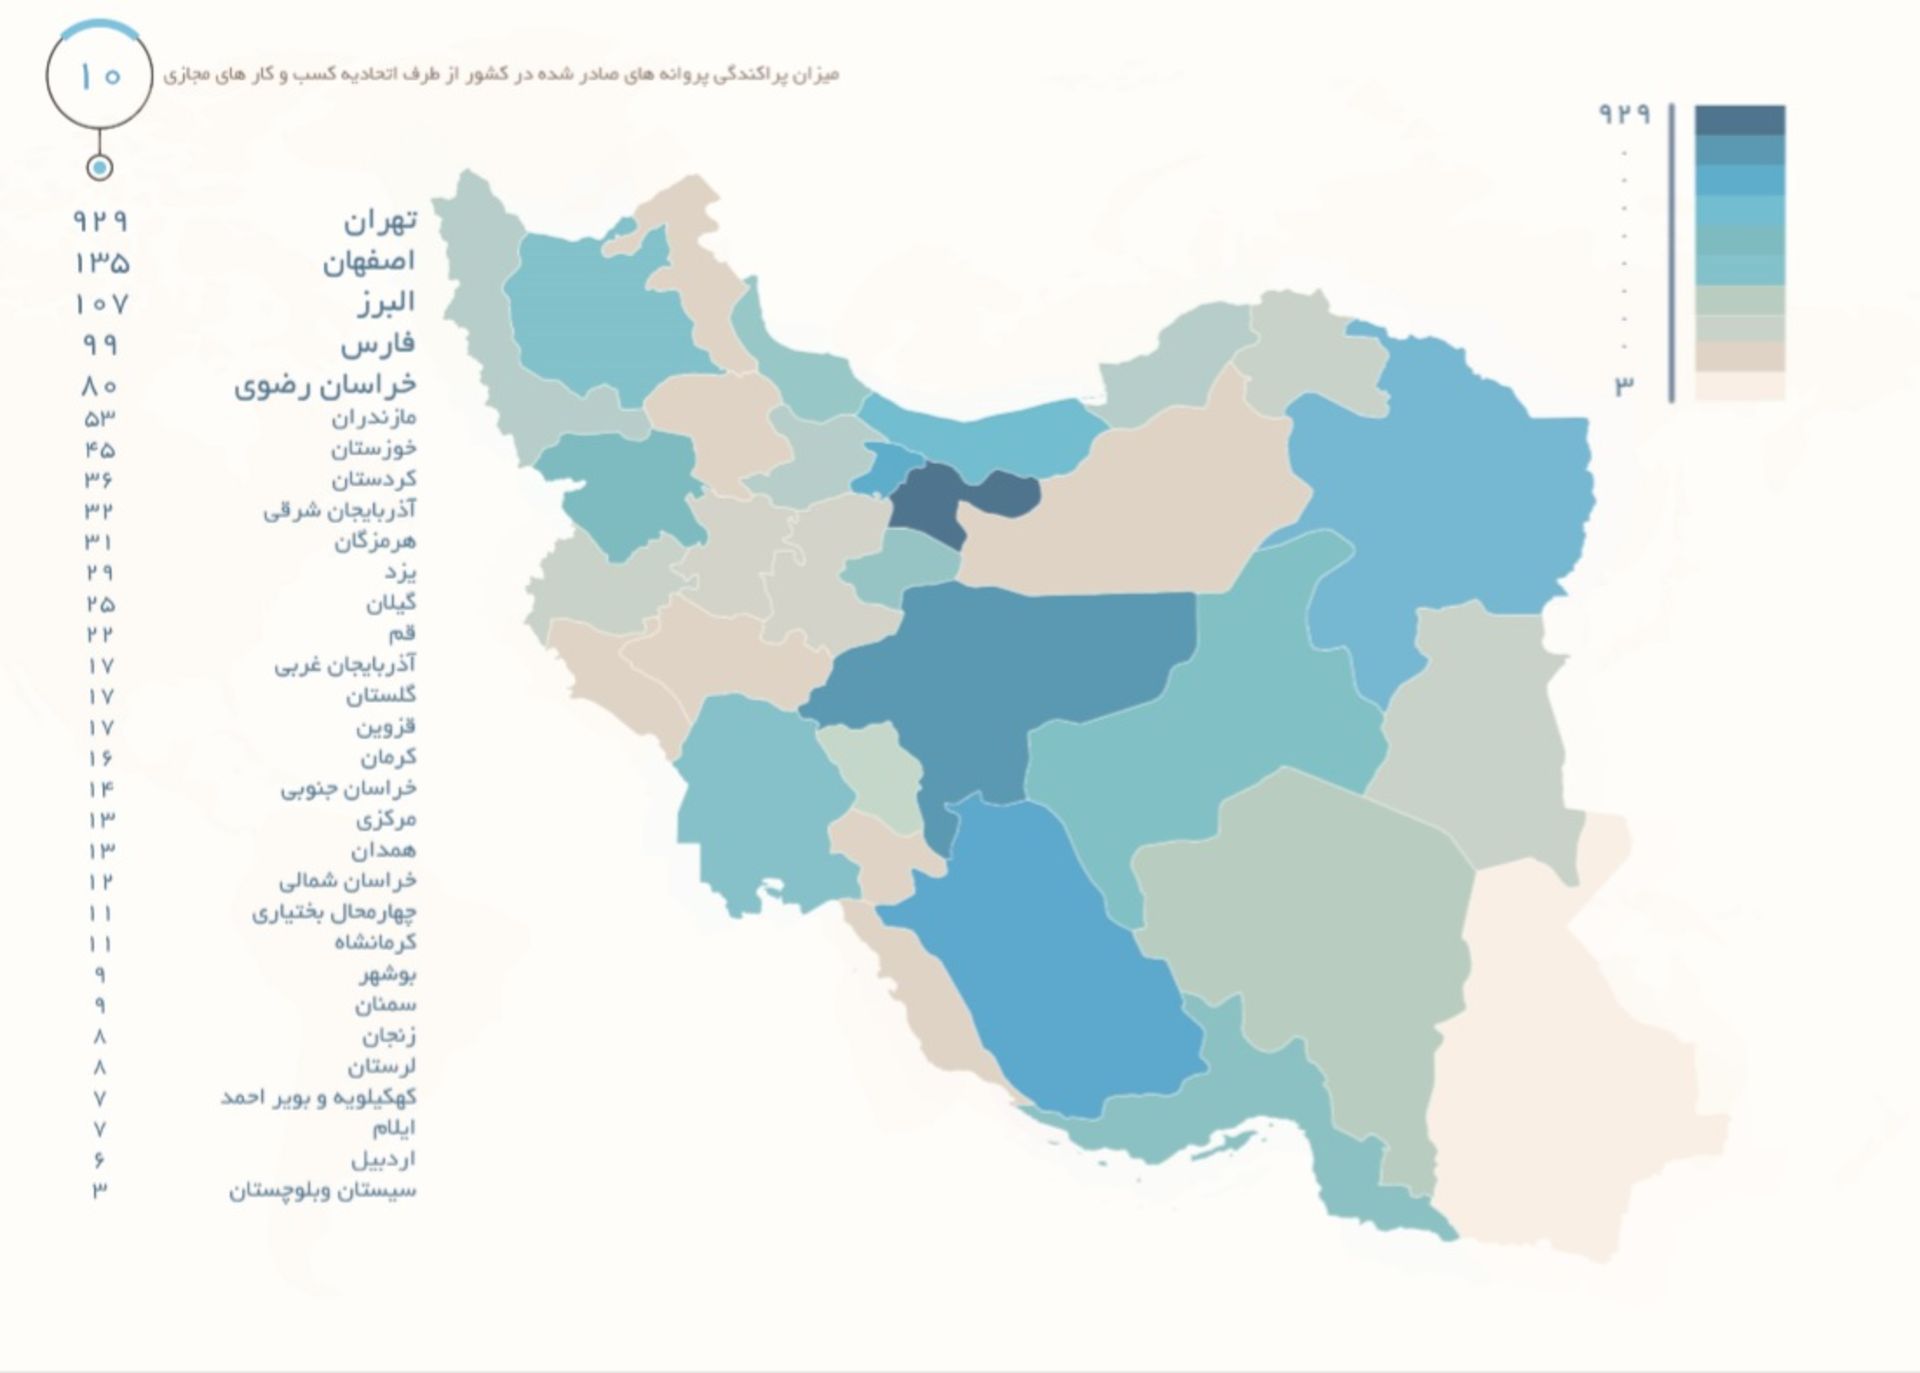 مرجع متخصصين ايران نقشه پراكندگي استاني مجوزهاي صادرشده اتحاديه كسب و كارهاي الكترونيك